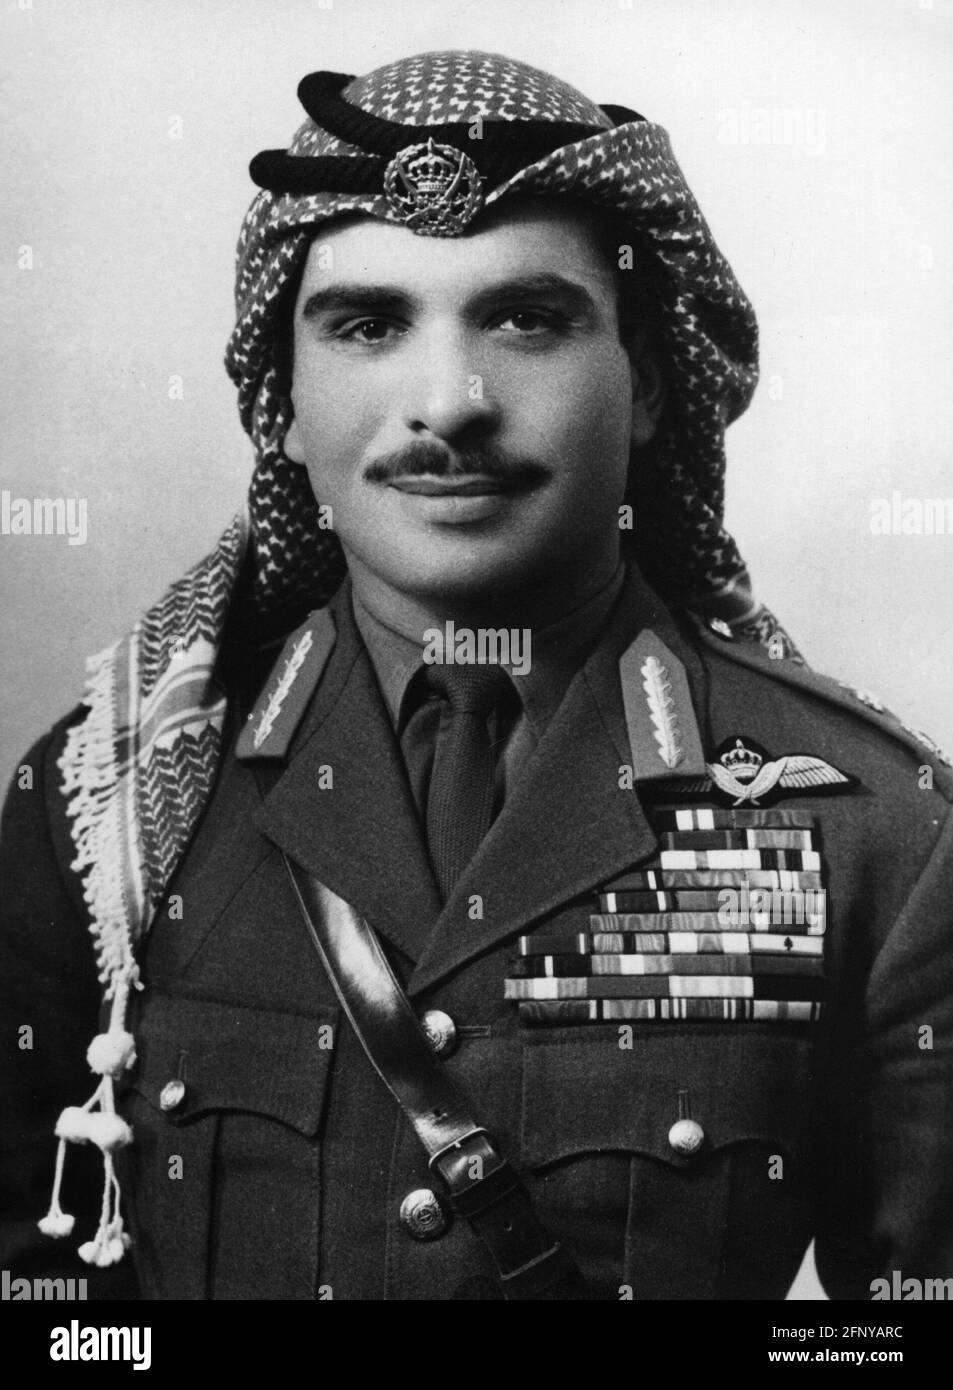 Hussein bin Talal, 14.11.1935 - 7.2.1999, Roi de Jordanie 1952 - 1999, portrait, années 1950, INFO-AUTORISATION-DROITS-SUPPLÉMENTAIRES-NON-DISPONIBLE Banque D'Images